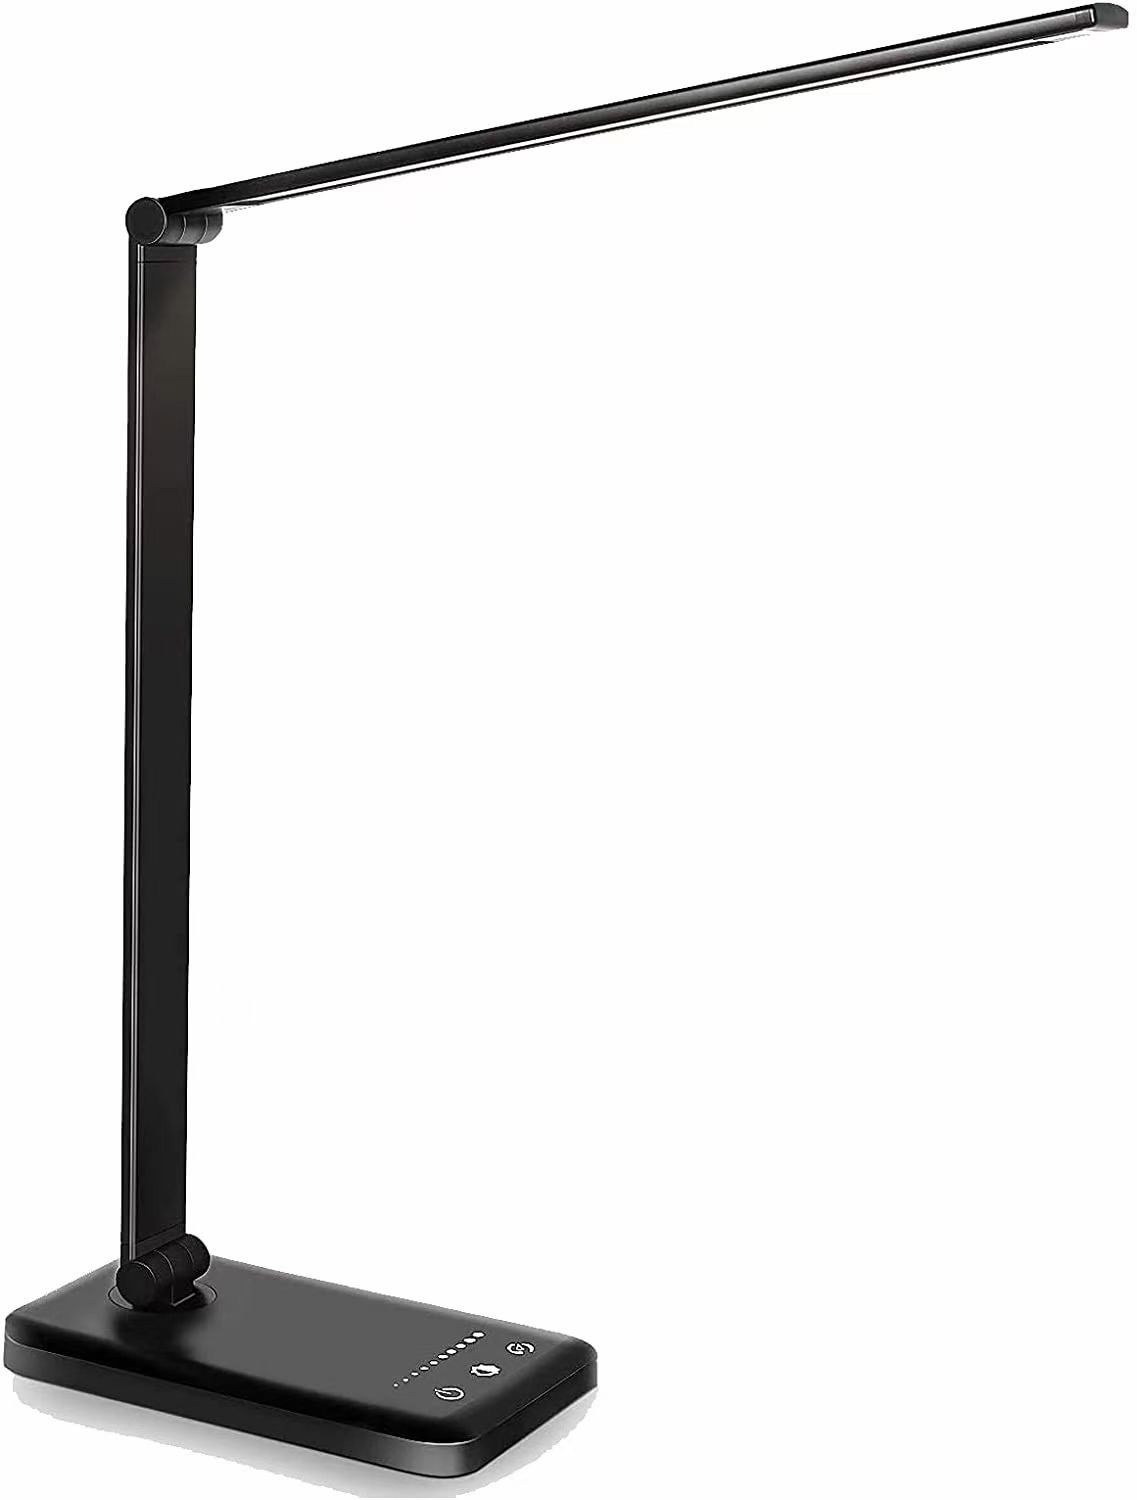 The Led Desk Lamp